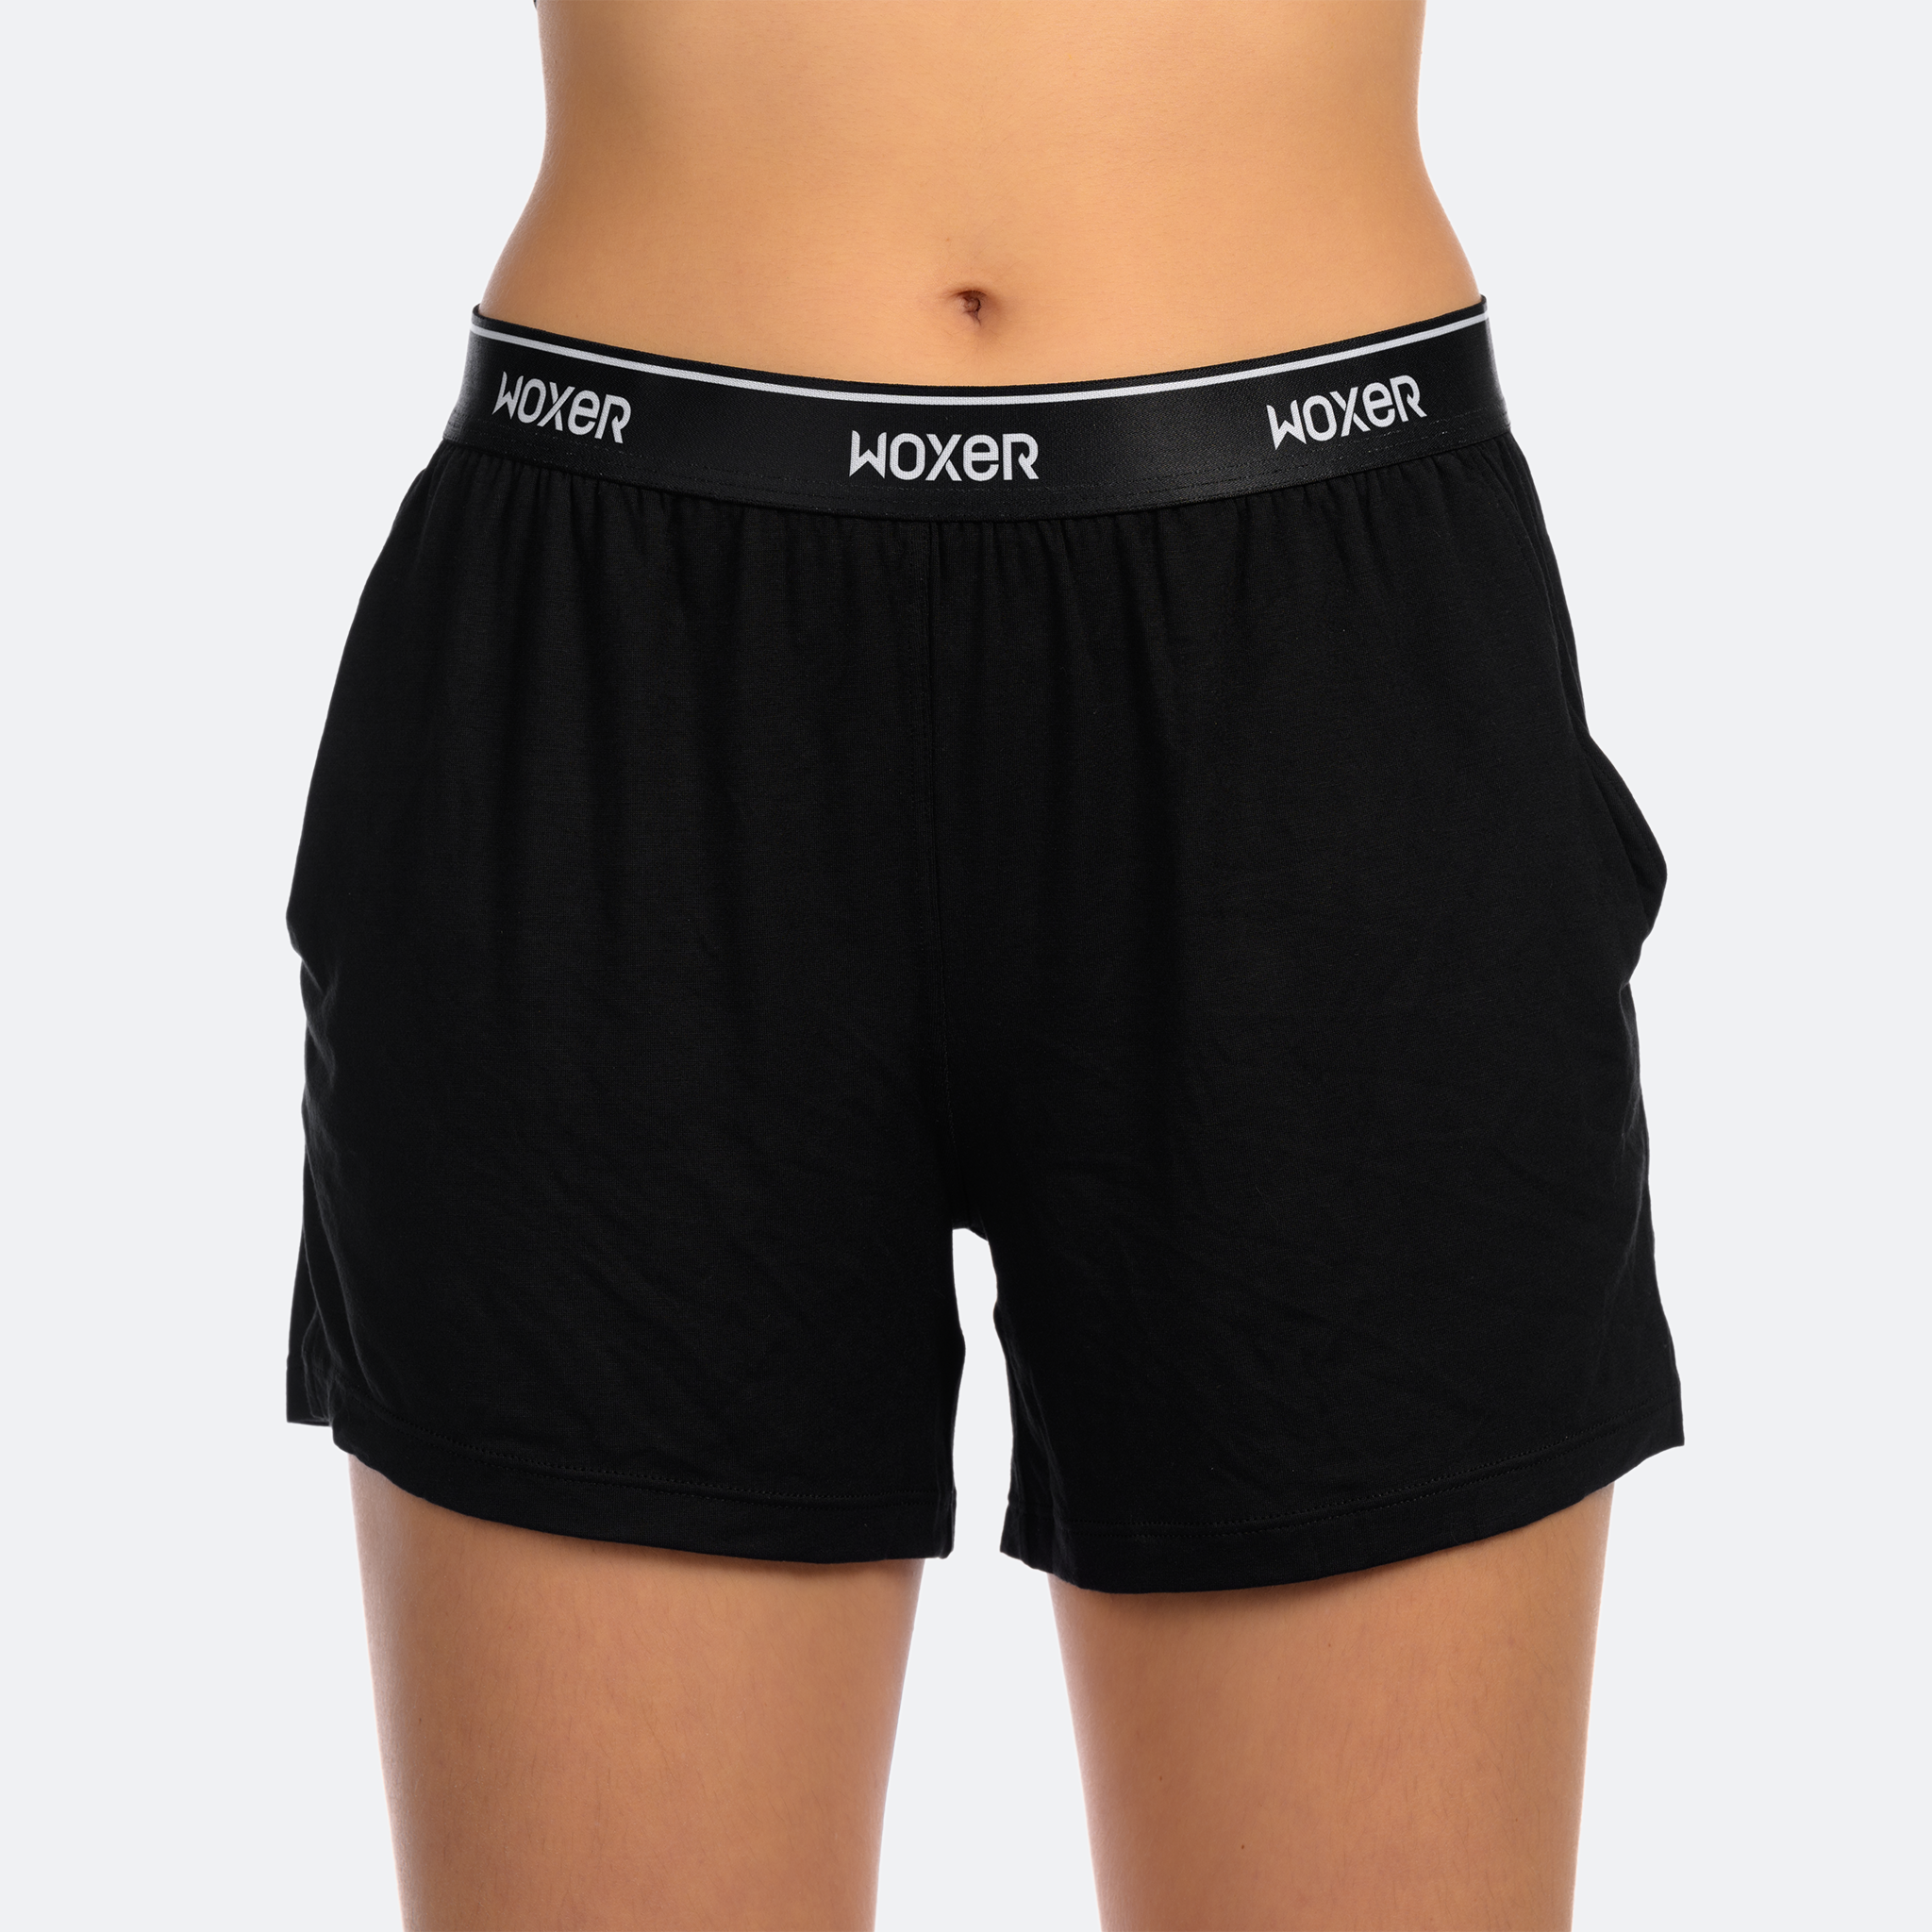 Dreamer Black 2.0 | Boxer Briefs for Women | Girls Boxer Shorts | Woxer